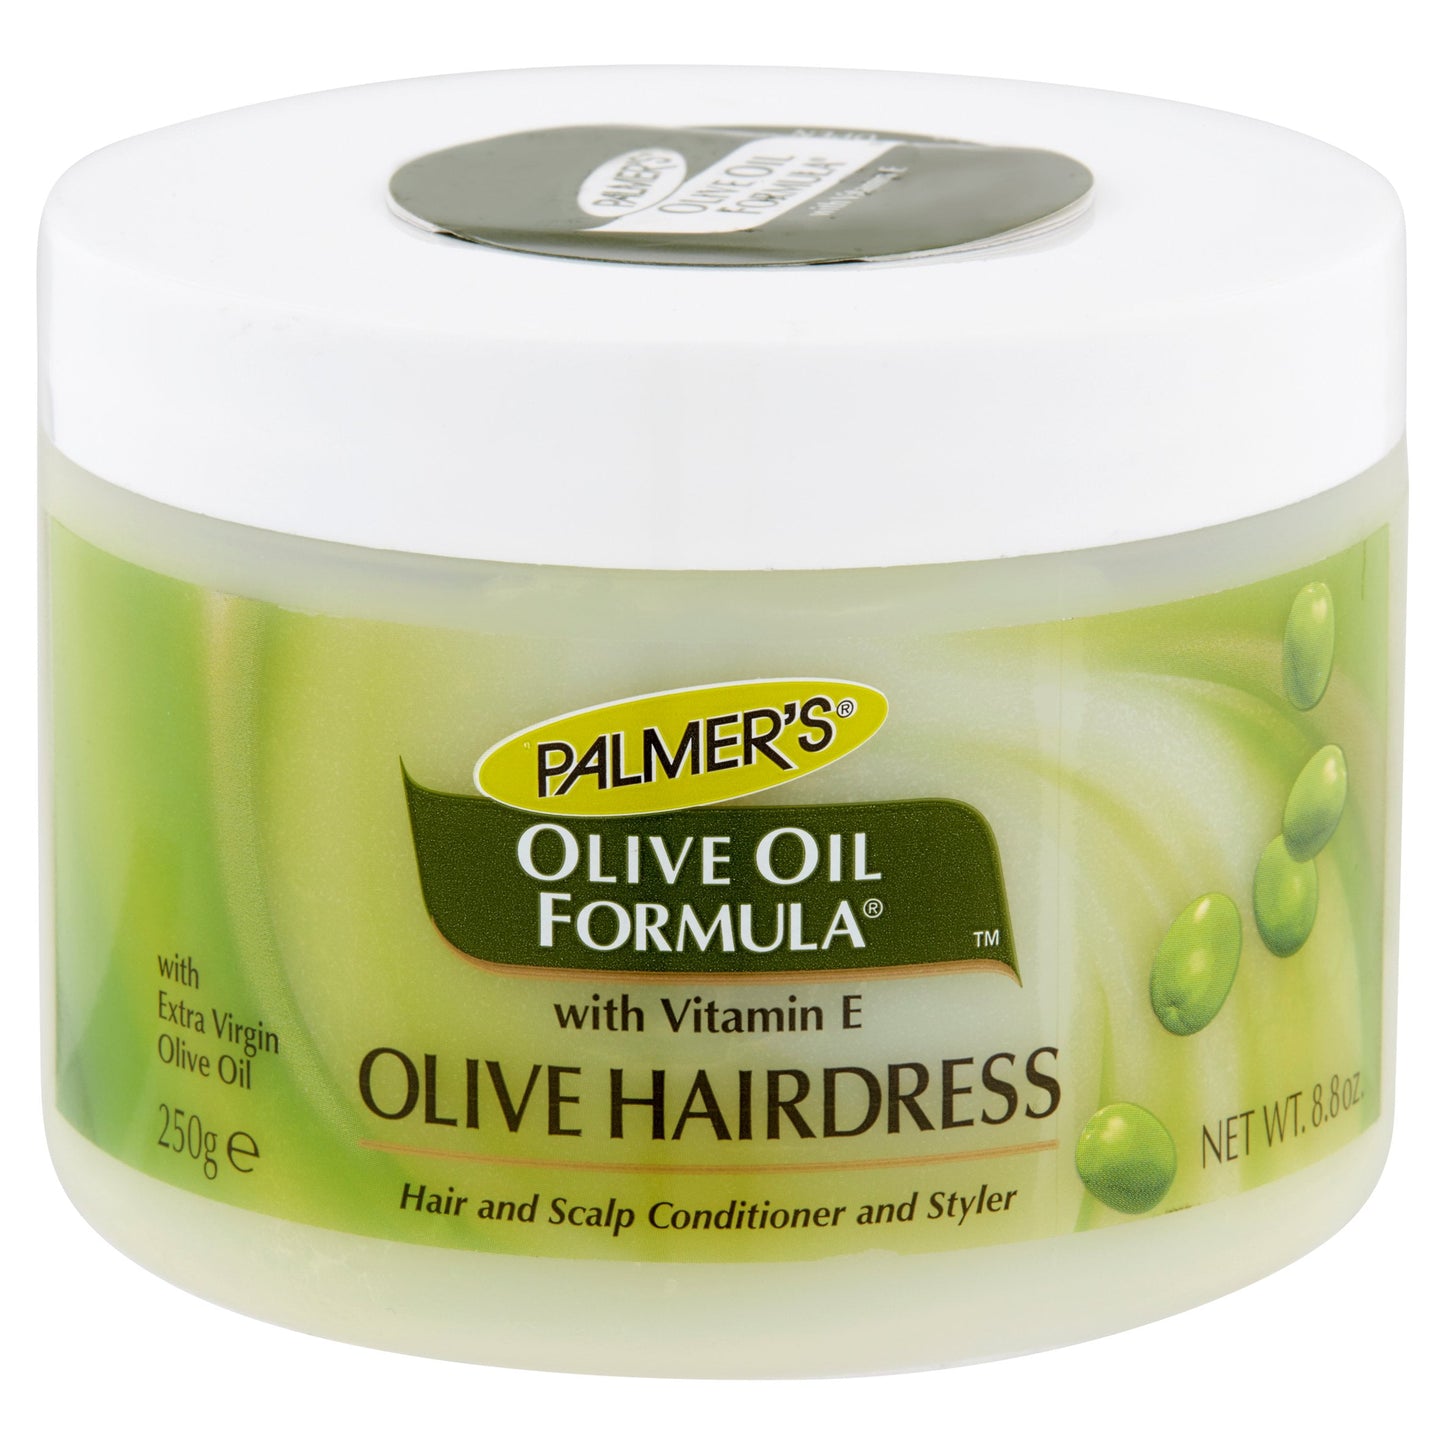 Palmer’s Olive Oil Formula Olive Hairdress (250g with extra virgin olive oil)